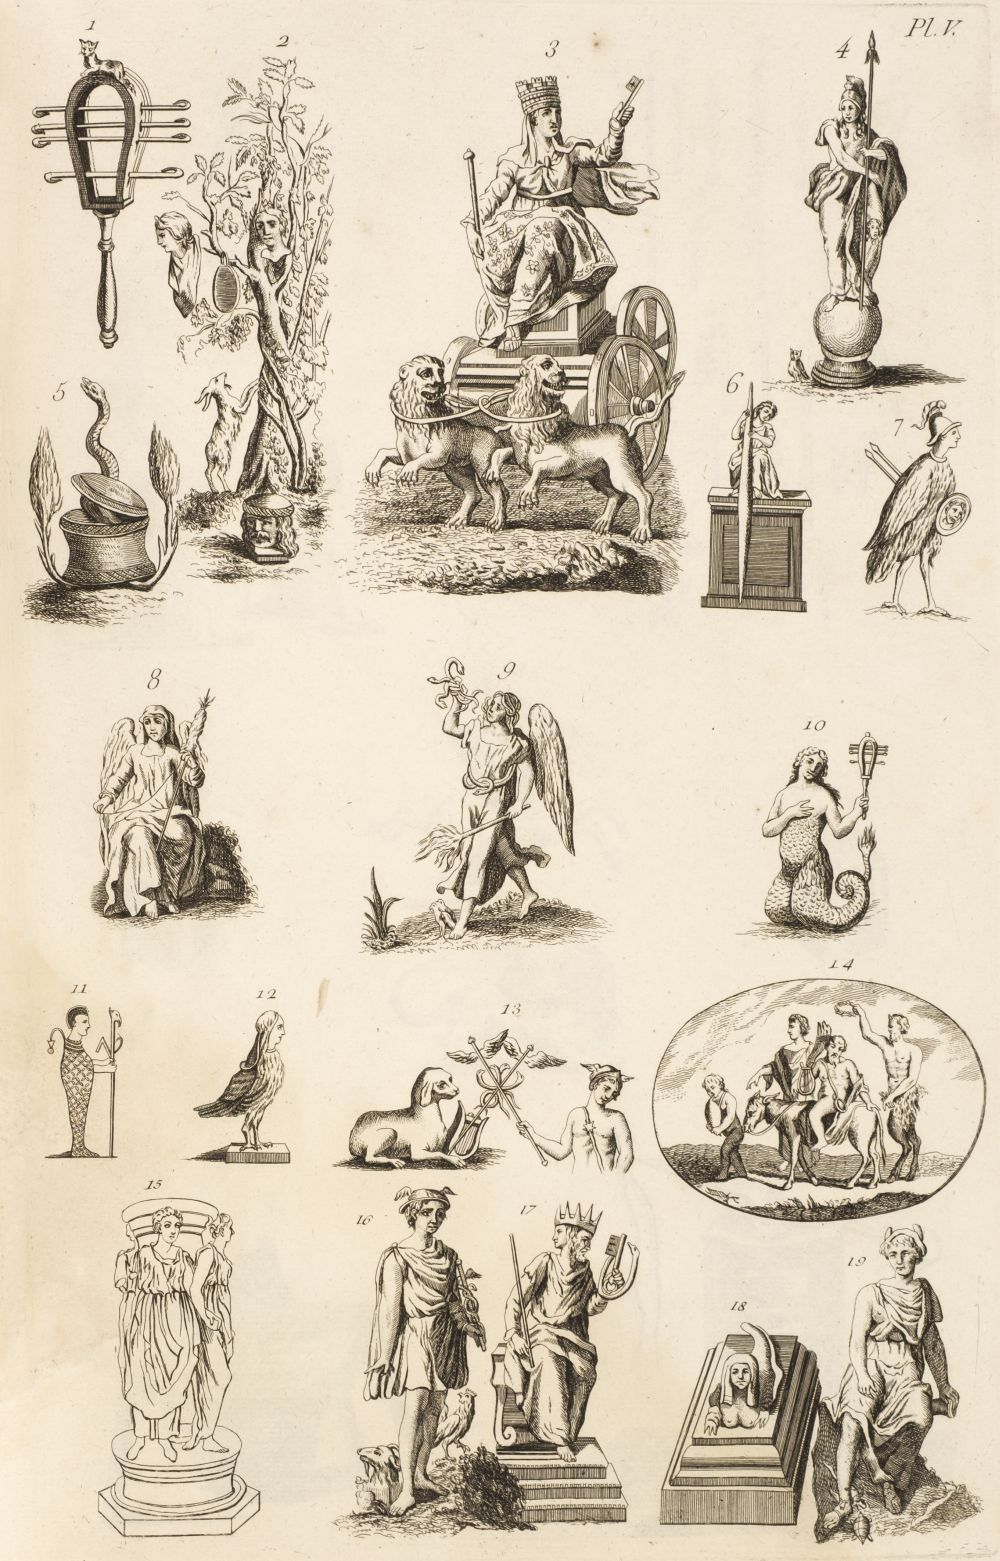 Mangeart (Thomas). Introduction a? la Science des Me?dailles, Paris, 1763